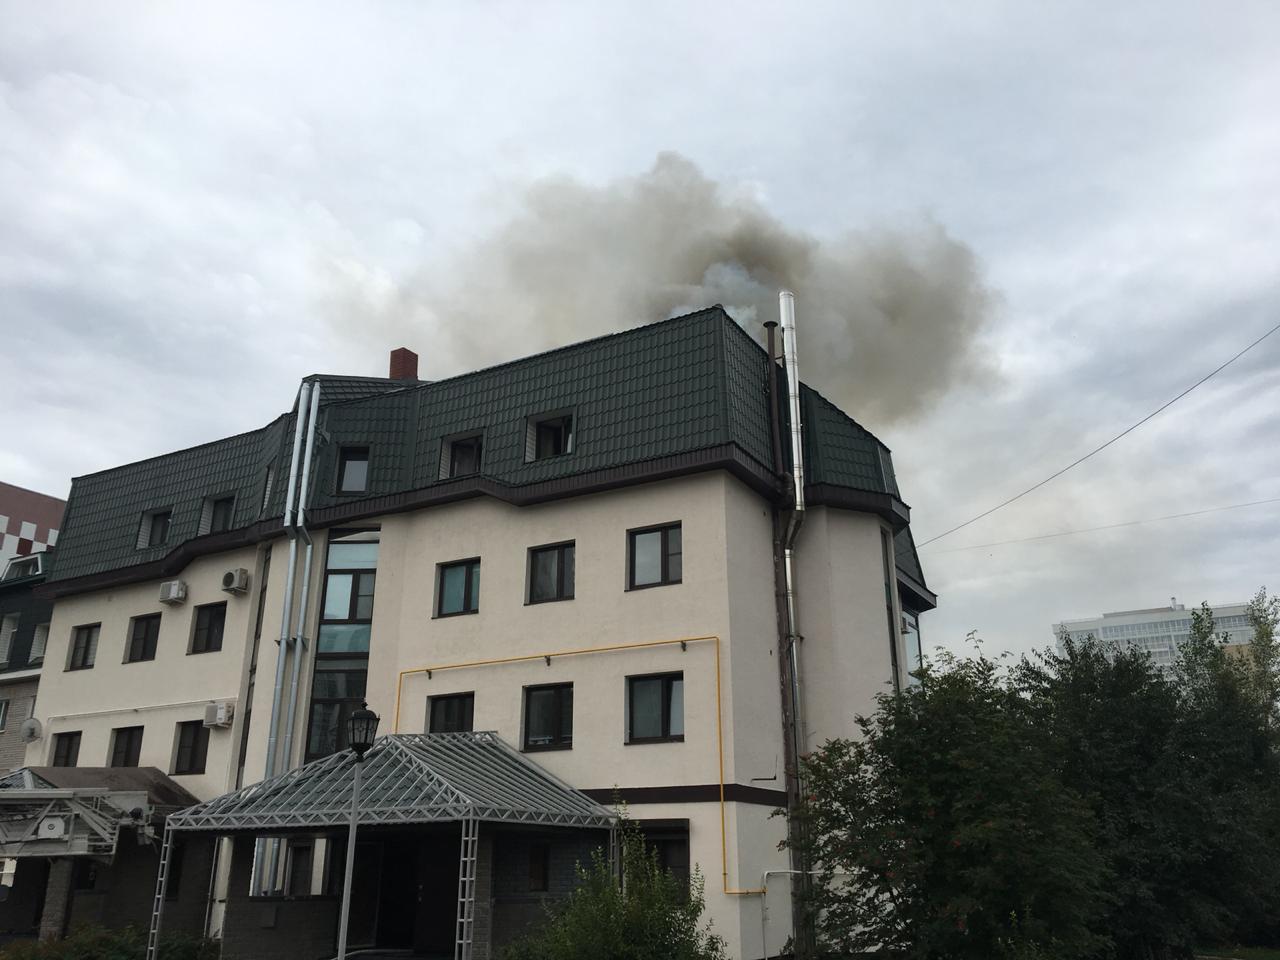 Пожар в элитном доме 12-го комплекса Челнов. Загорелась крыша (фото)